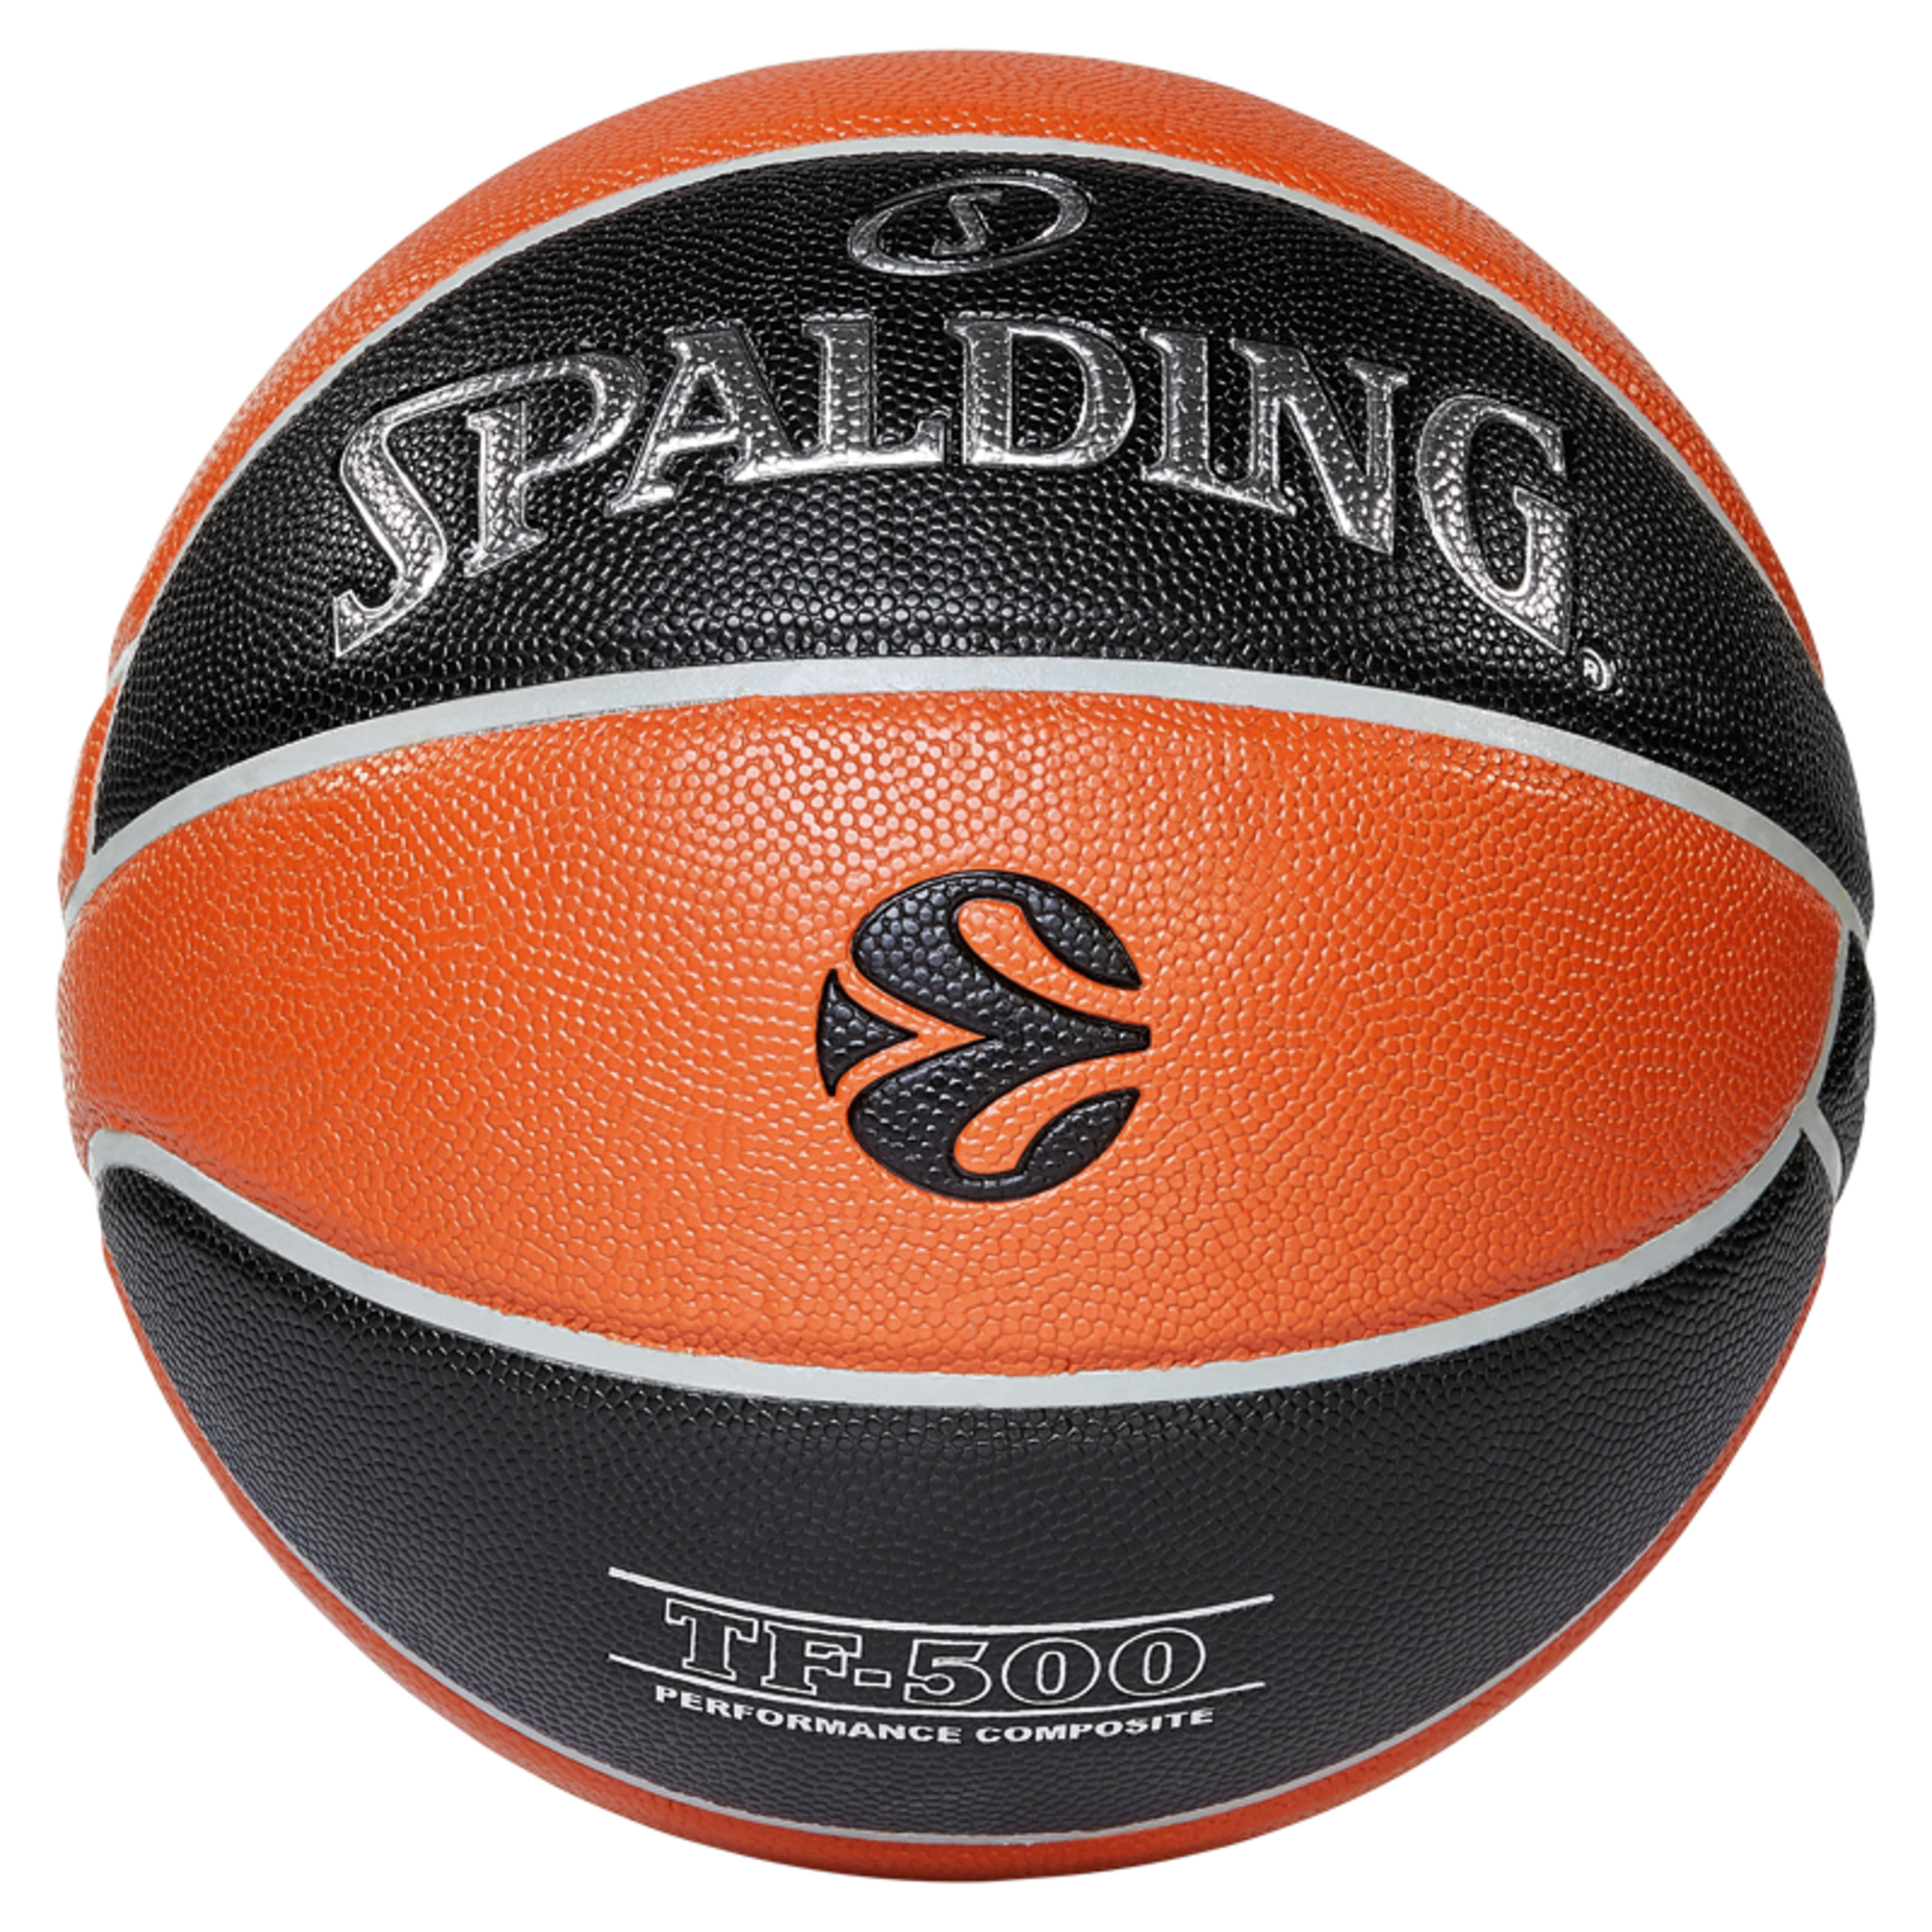 Balón De Baloncesto Euroleague Tf 500 In/out Sz. 7 (84-002z) - negro-naranja - 